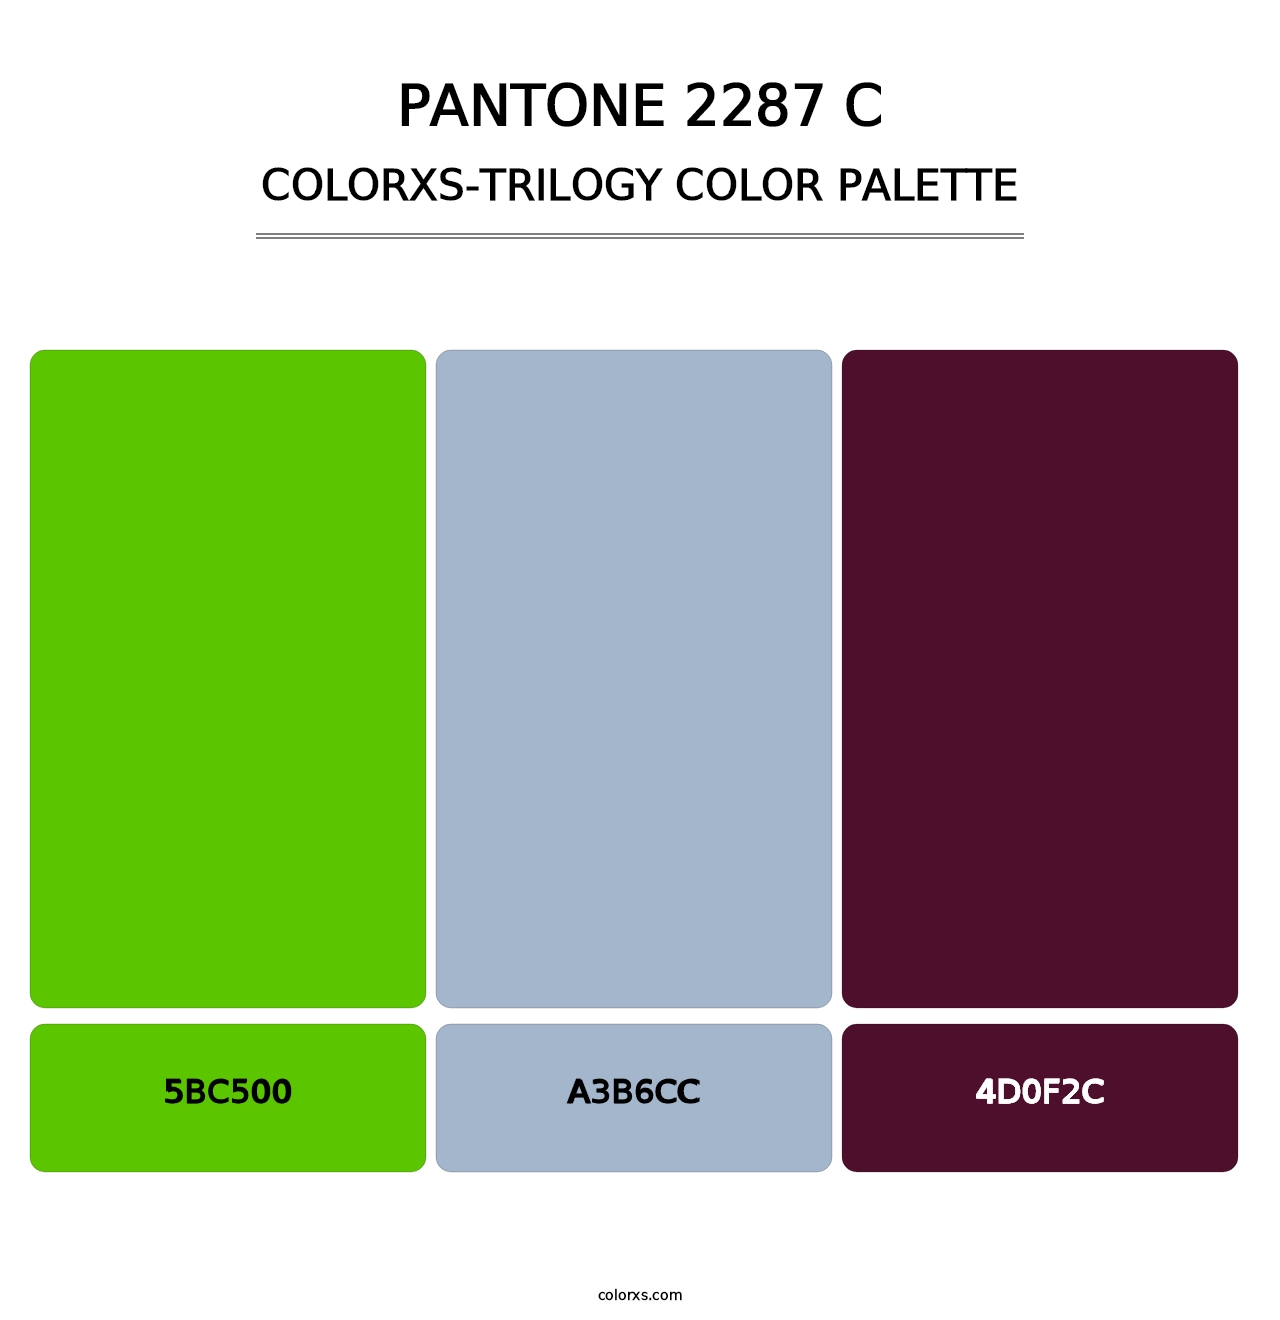 PANTONE 2287 C - Colorxs Trilogy Palette